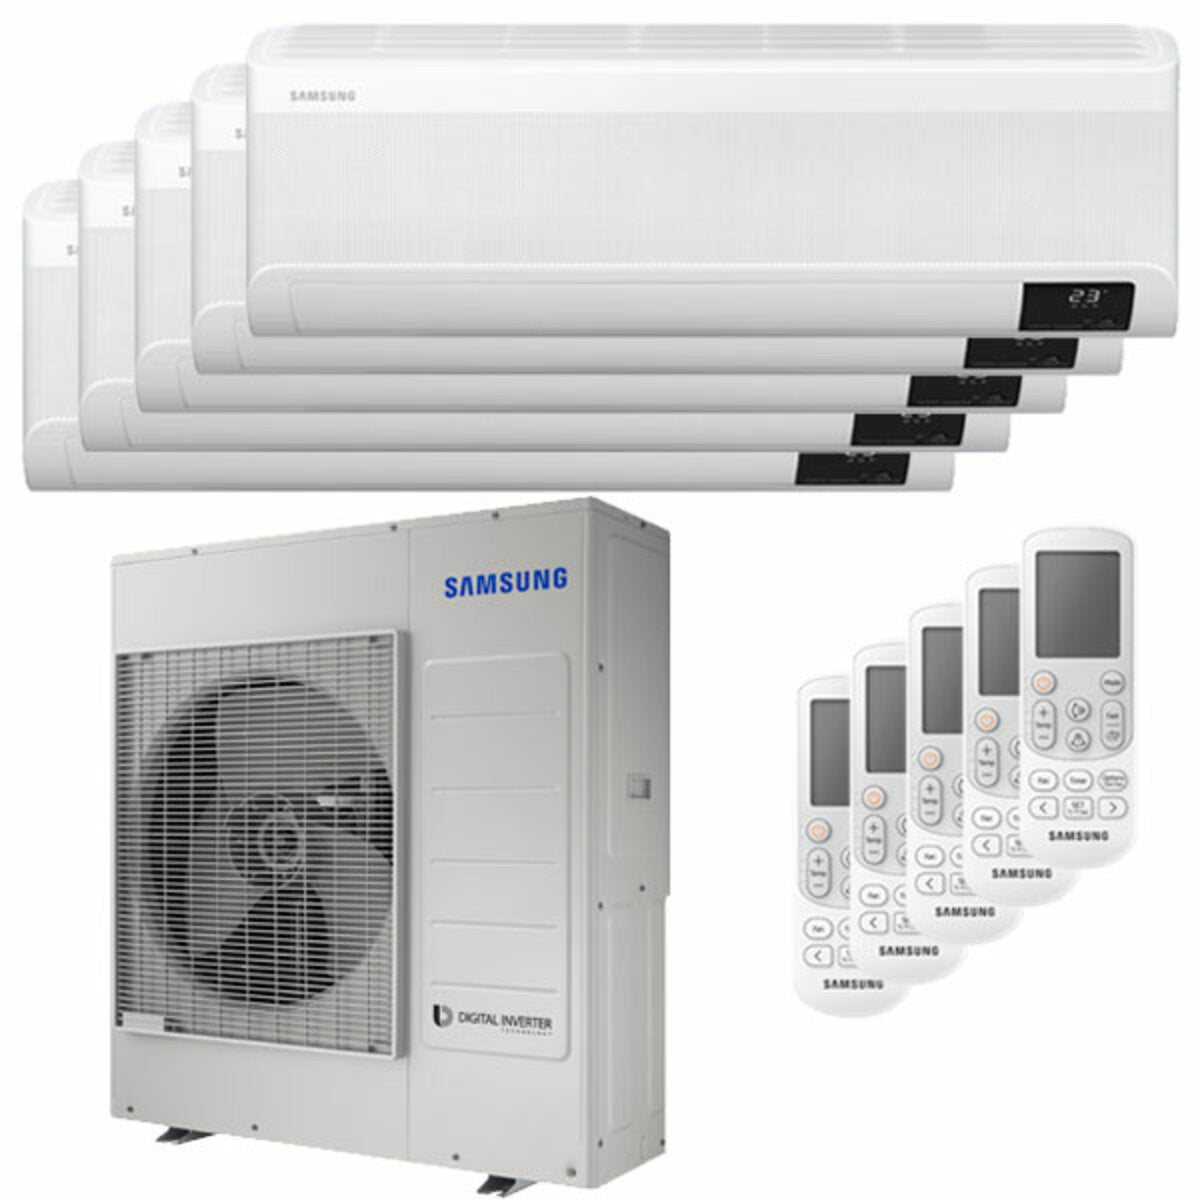 Samsung windfree Klimaanlage Avant Penta Split 7000 + 12000 + 12000 + 12000 + 12000 BTU Inverter A++ WLAN Außengerät 10,0 kW